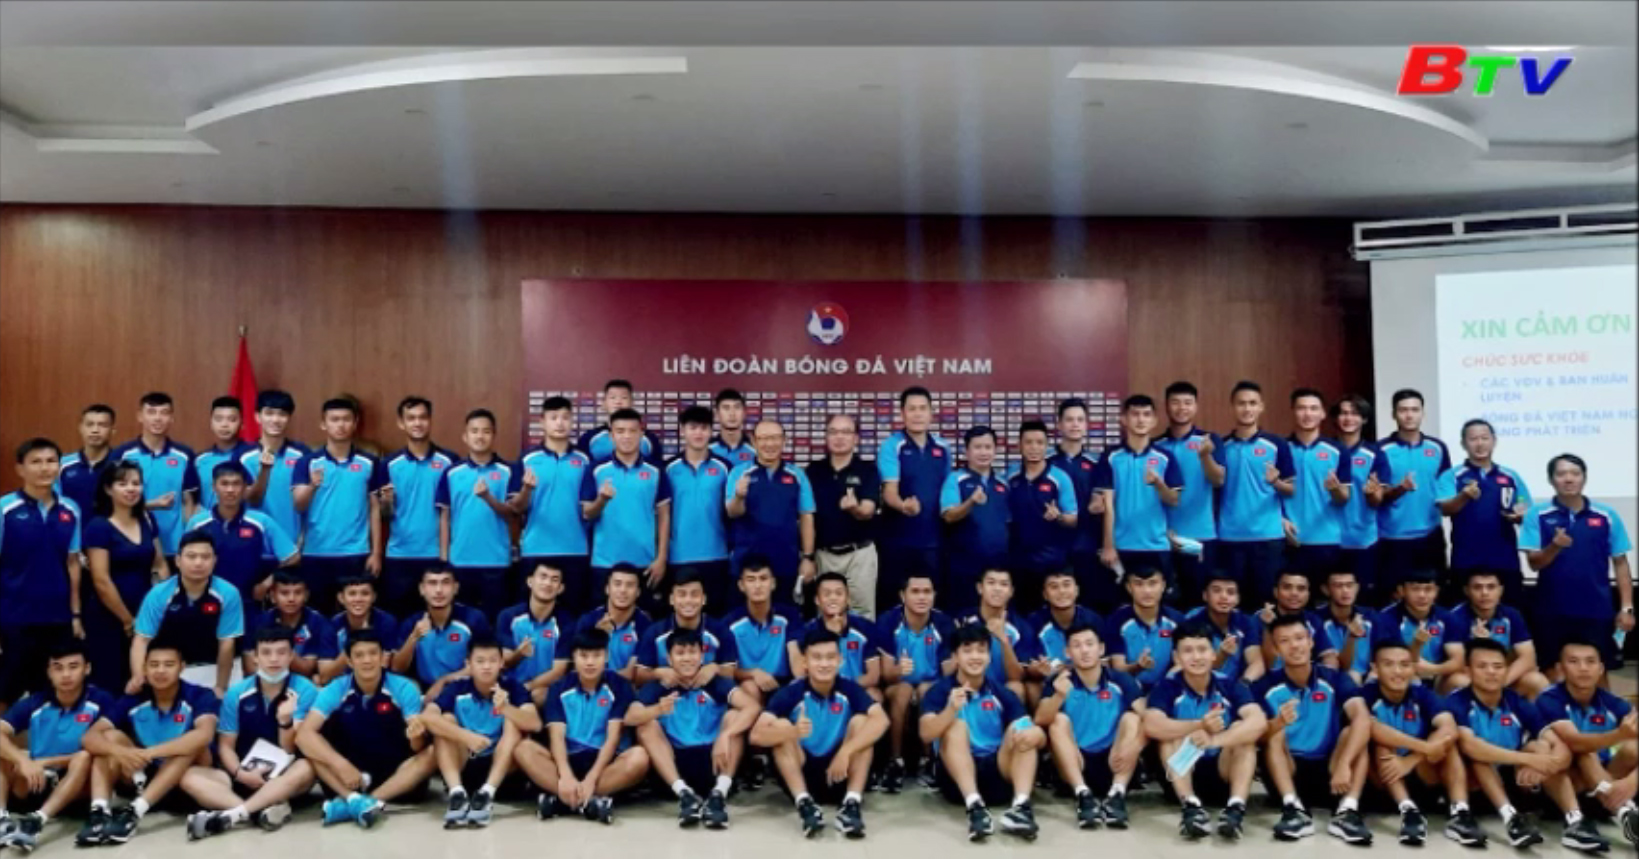 Đội tuyển U22 Việt Nam tham dự hội thảo về dinh dưỡng trong thể thao